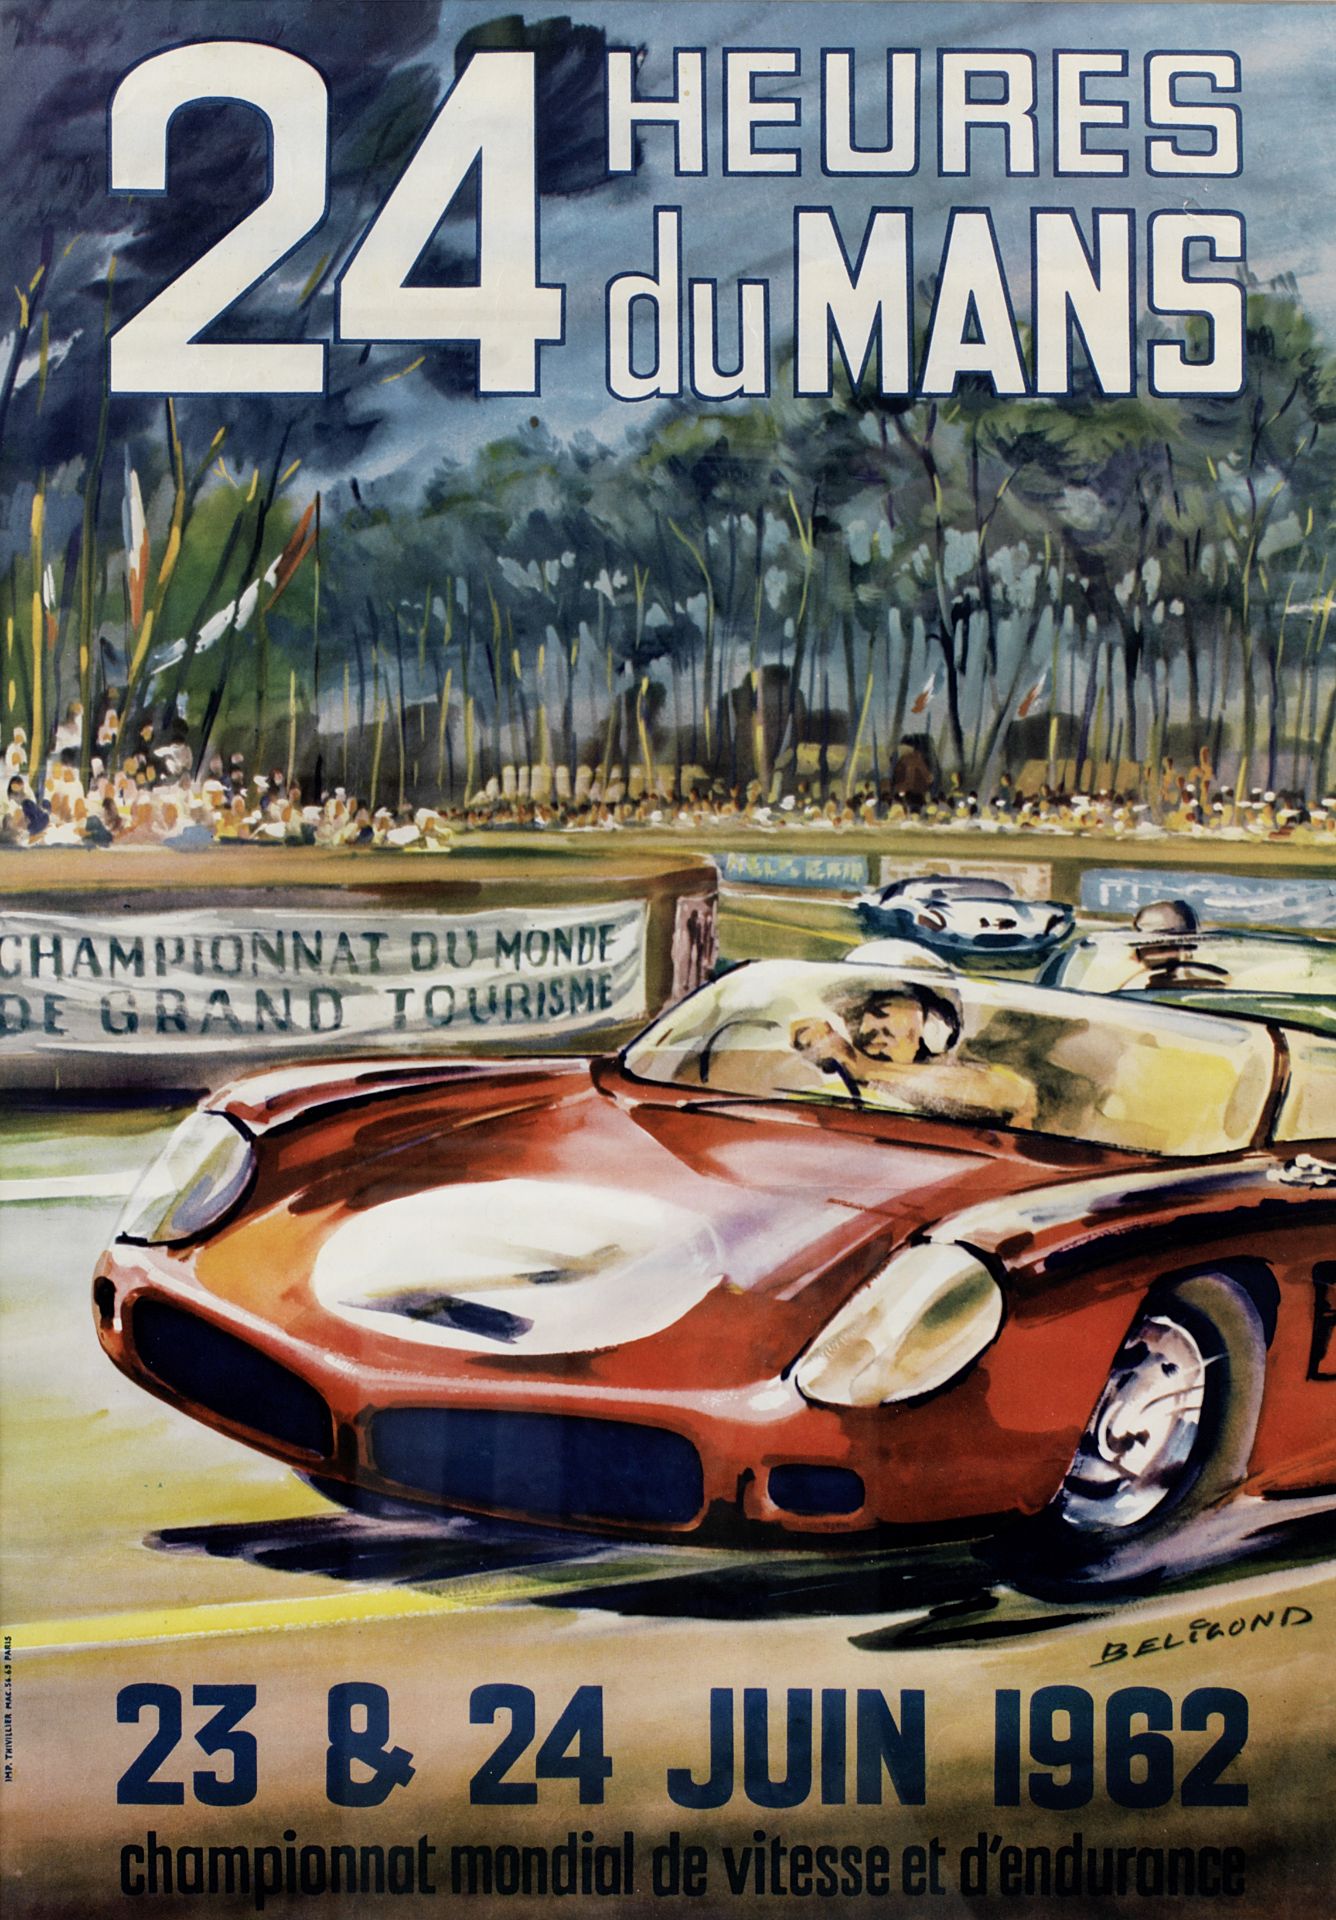 '24 Heures du Mans 23 & 24 Juin 1962' poster after Michel Beligond (French, 1927-1973),